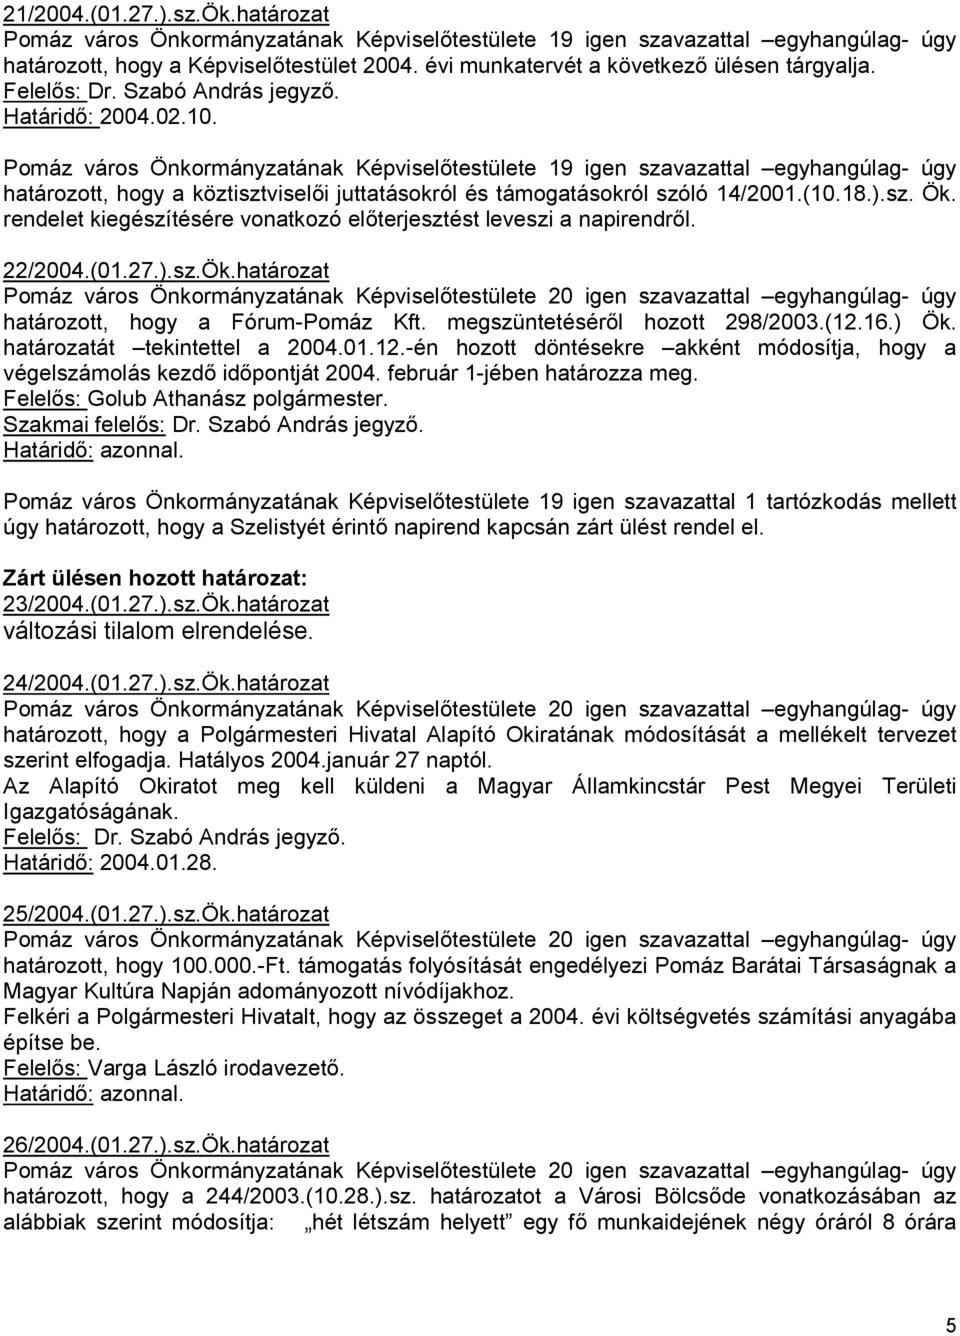 Pomáz város Önkormányzatának Képviselıtestülete 19 igen szavazattal egyhangúlag- úgy határozott, hogy a köztisztviselıi juttatásokról és támogatásokról szóló 14/2001.(10.18.).sz. Ök.